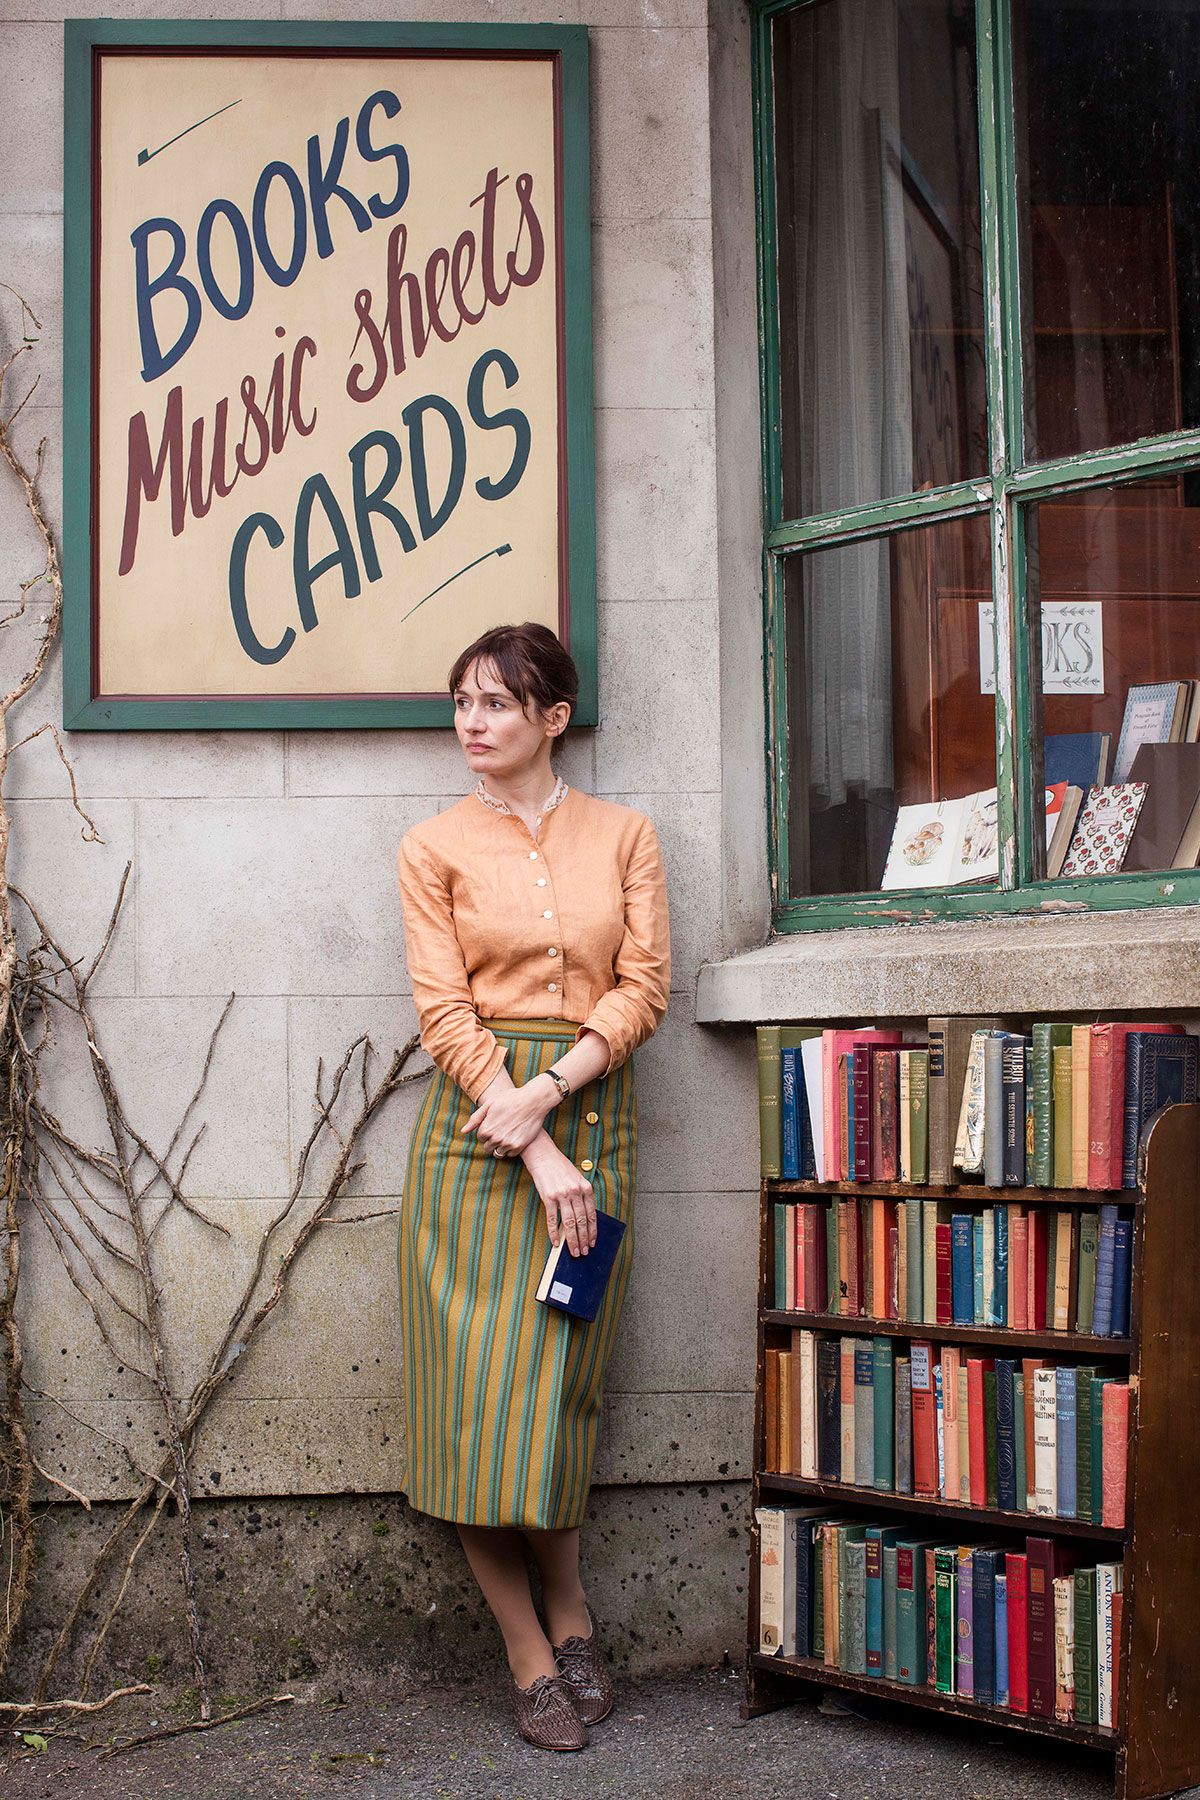 Skuespillerinnen Emily Mortimer står utenfor bokhandelen sin i The Bookshop-filmen